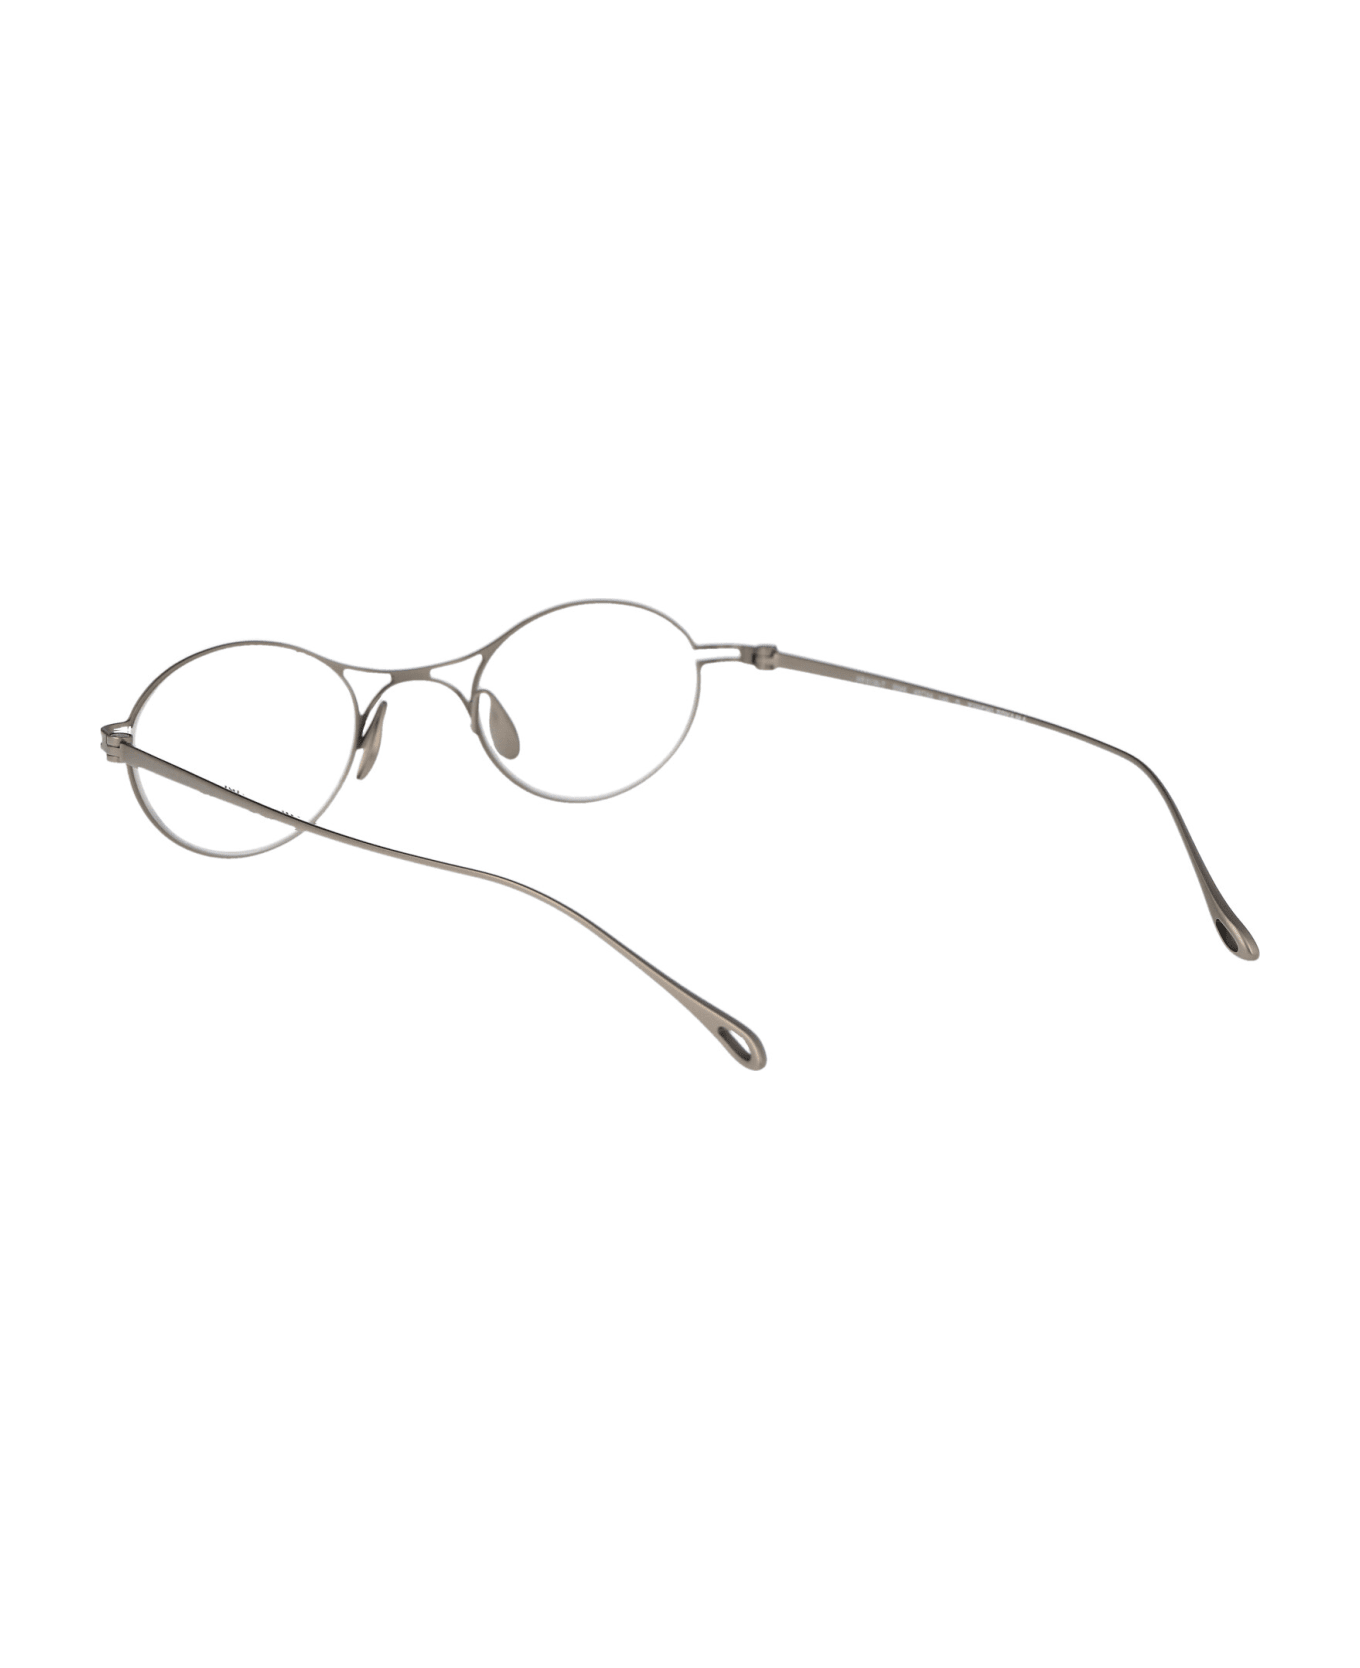 Giorgio Armani 0ar5135t Glasses - 3346 Matte Silver